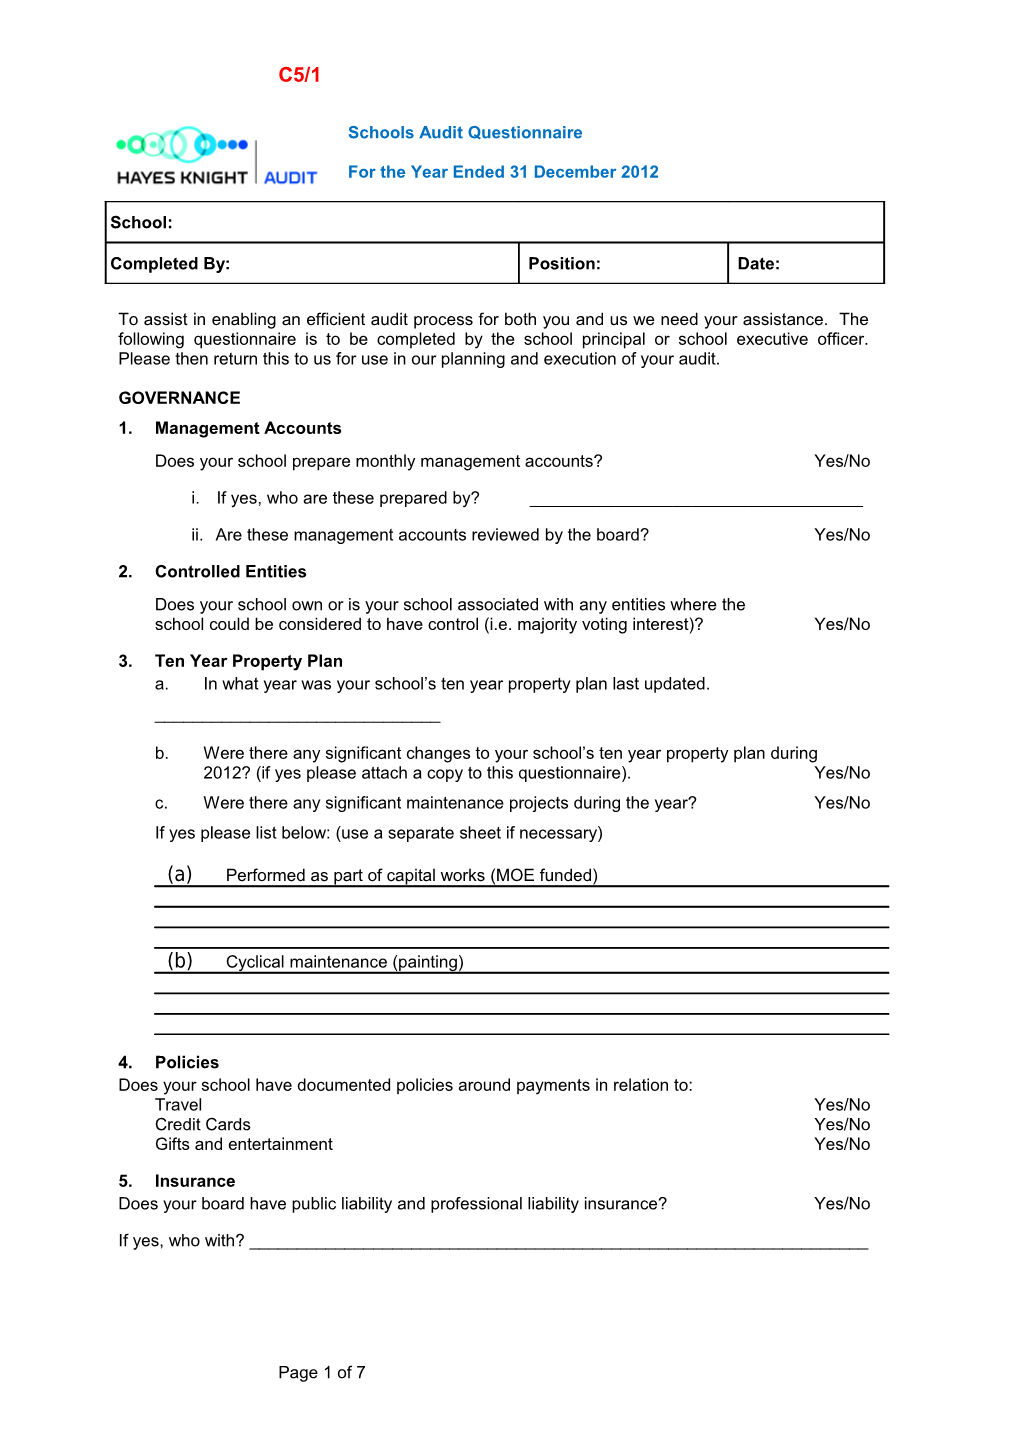 Schools Audit Questionnaire